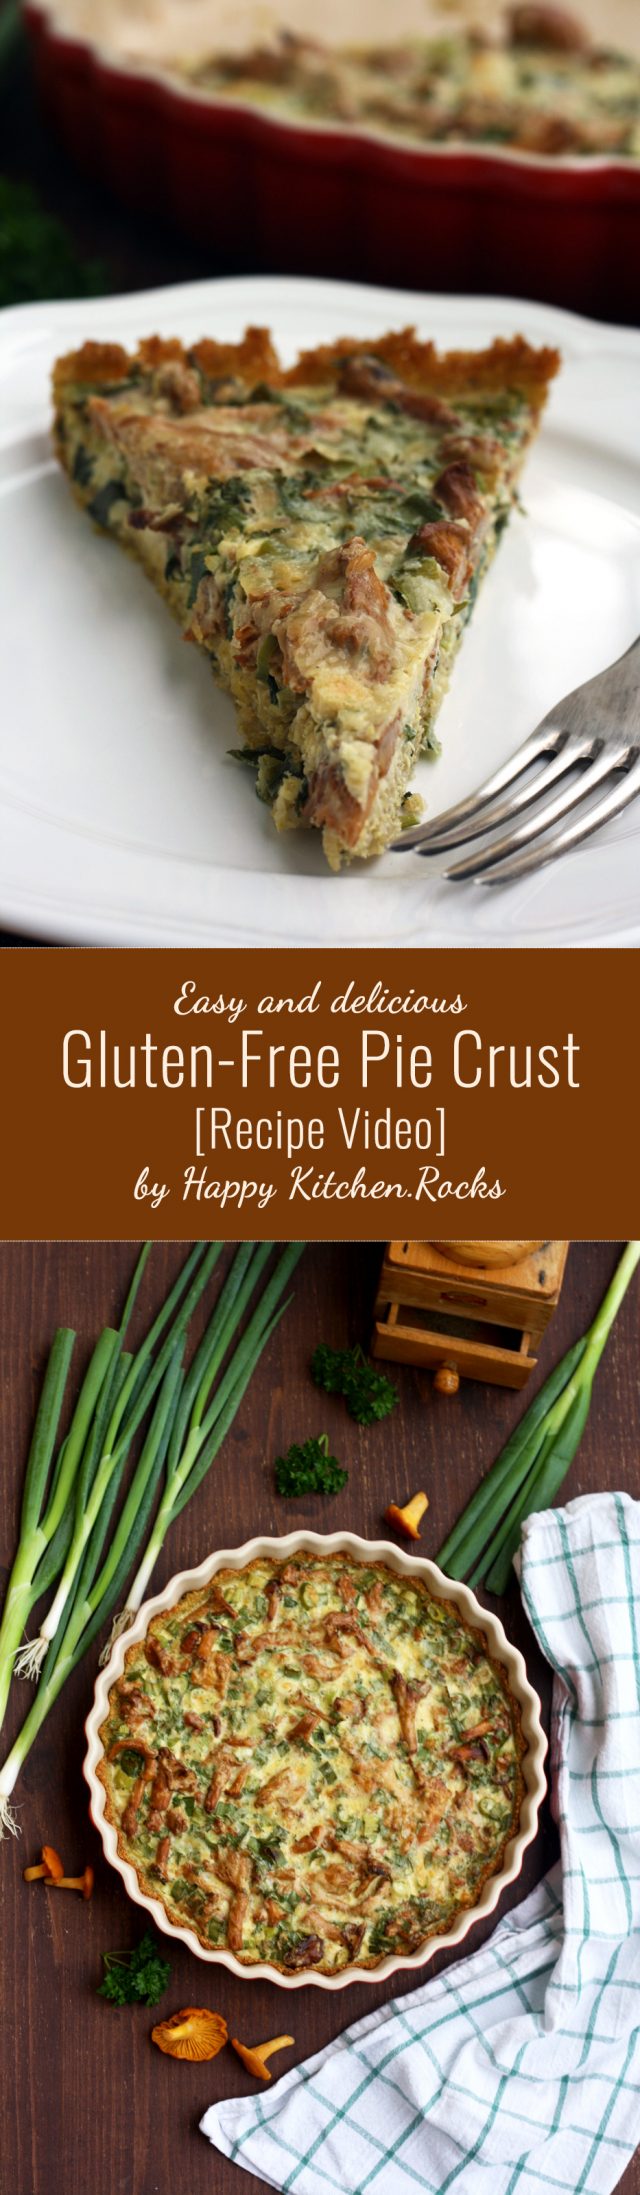 Easy Gluten-Free Pie Crust Video • Happy Kitchen